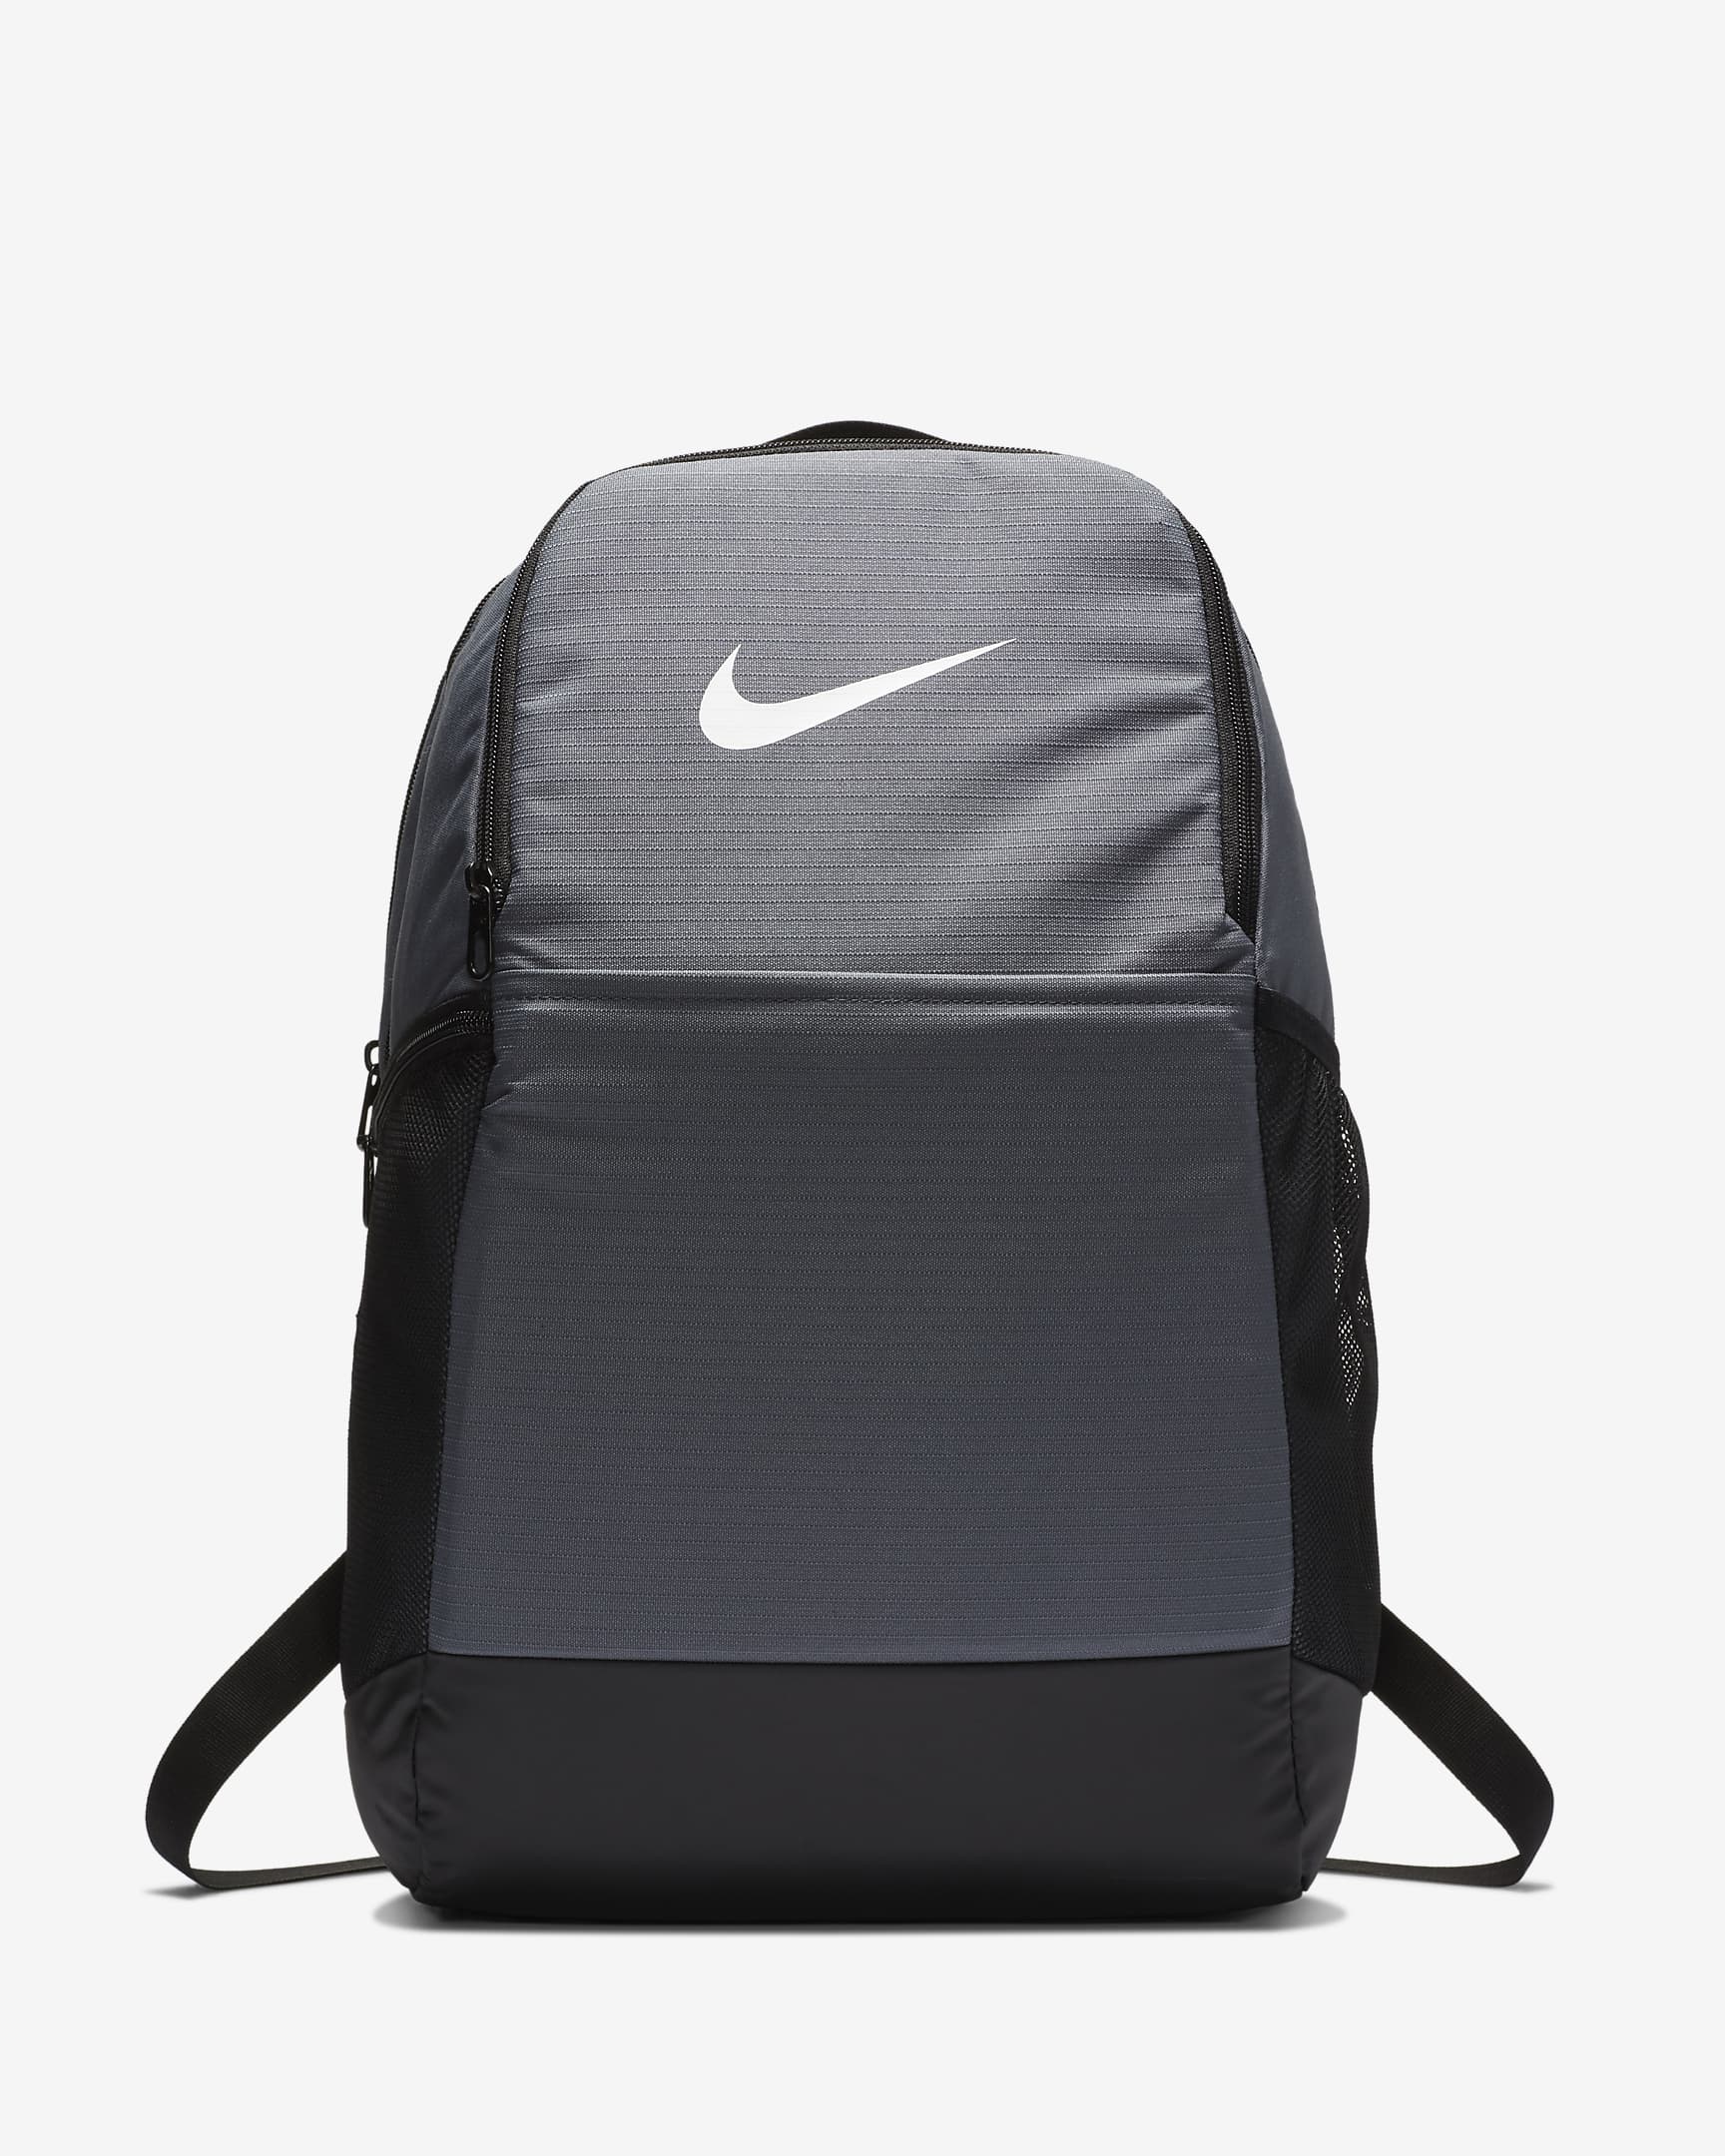 Nike Brasilia Training Backpack (Medium). Nike NO